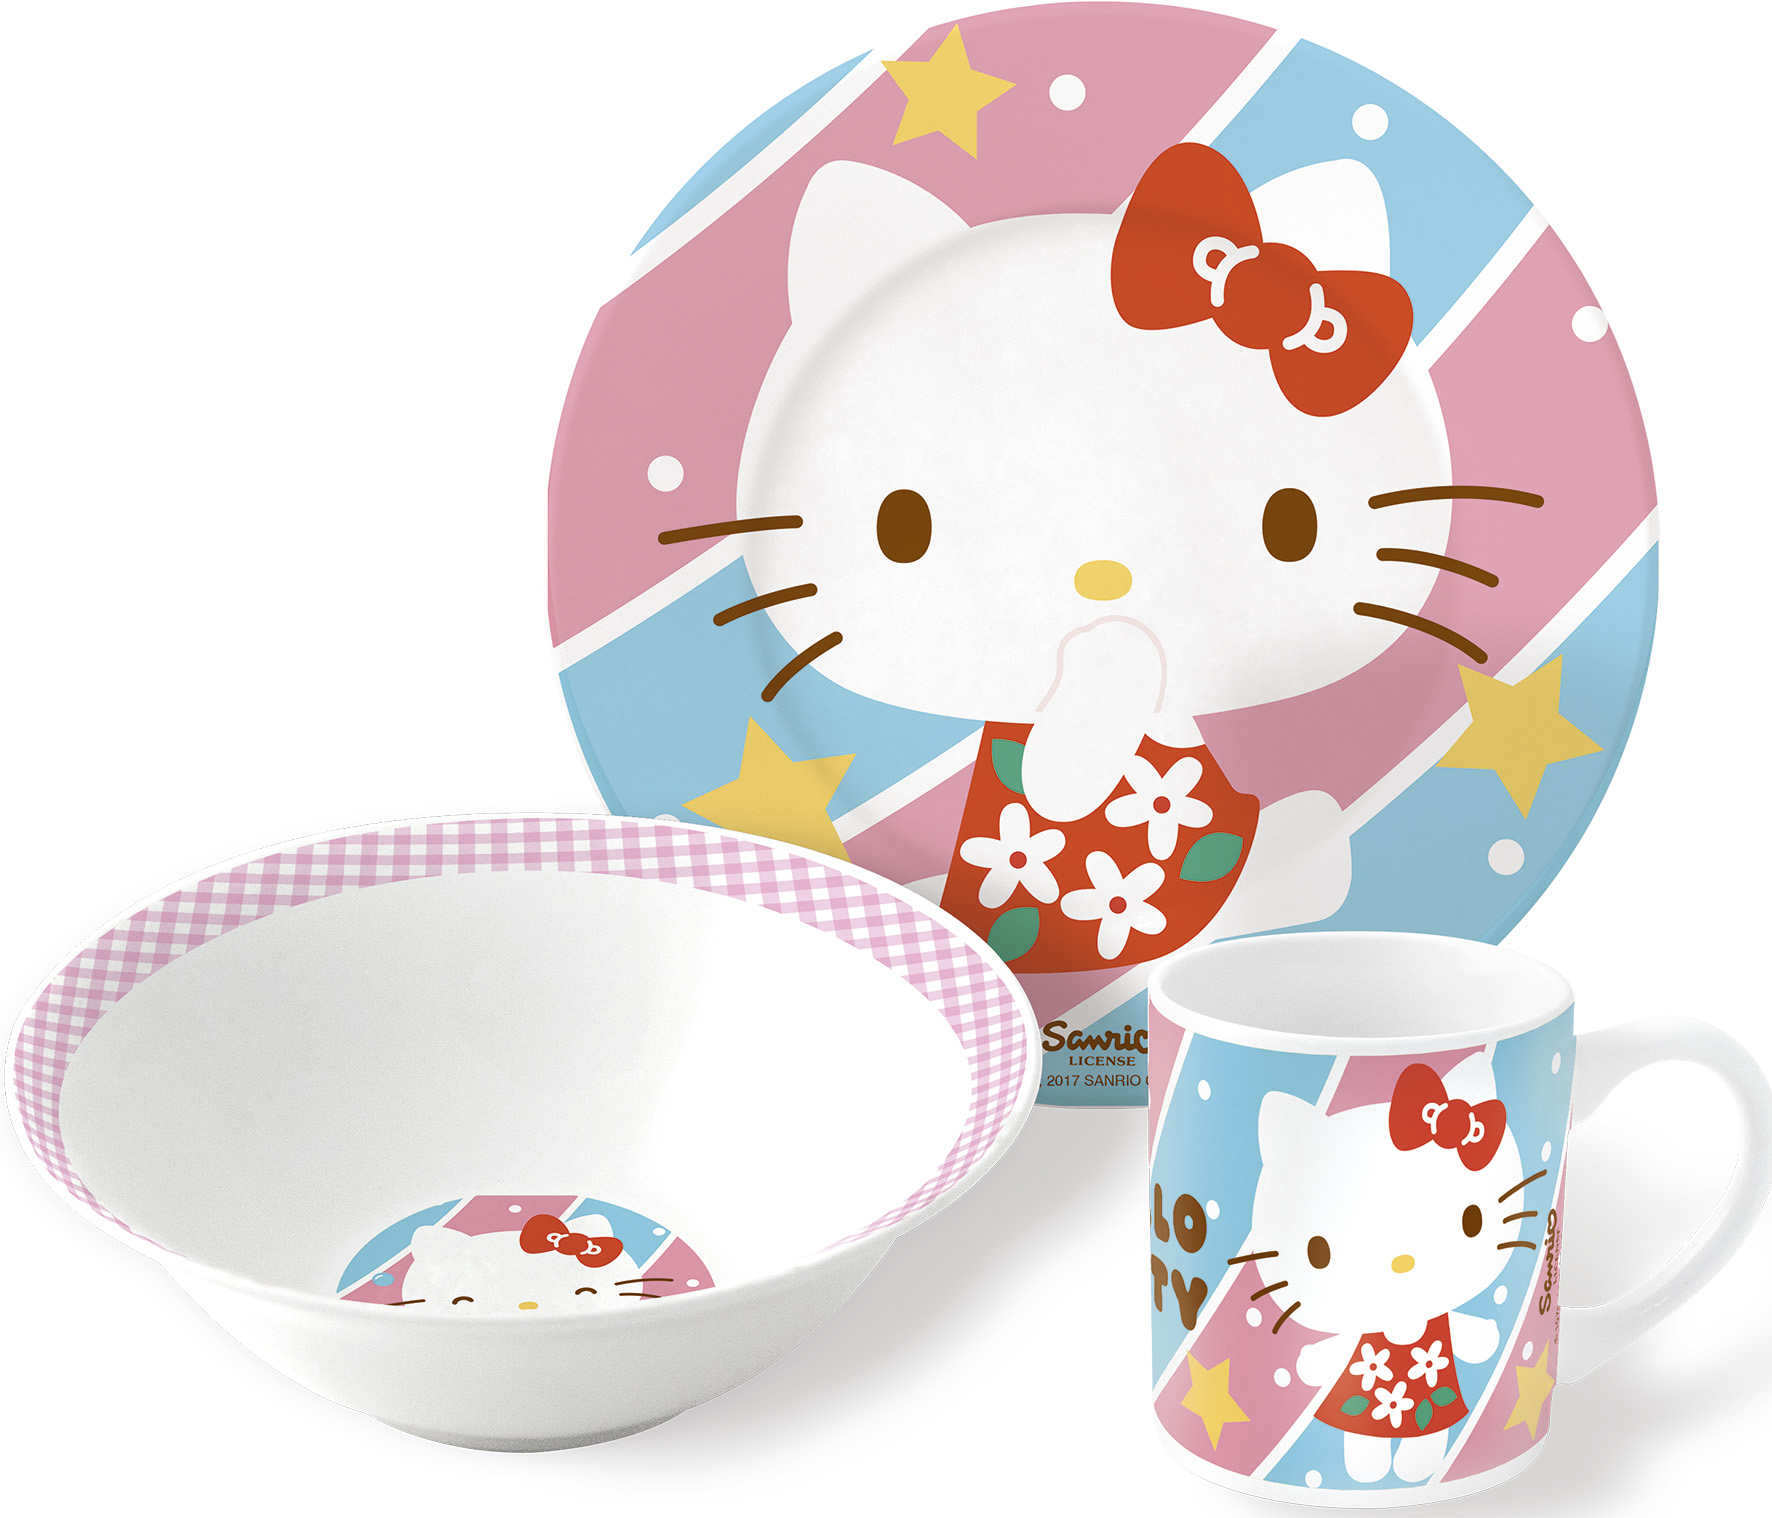 Набор посуды керамической Stor в подарочной упаковке Hello Kitty №4, 46285 stor набор посуды керамической звездные войны реальность 3 предмета